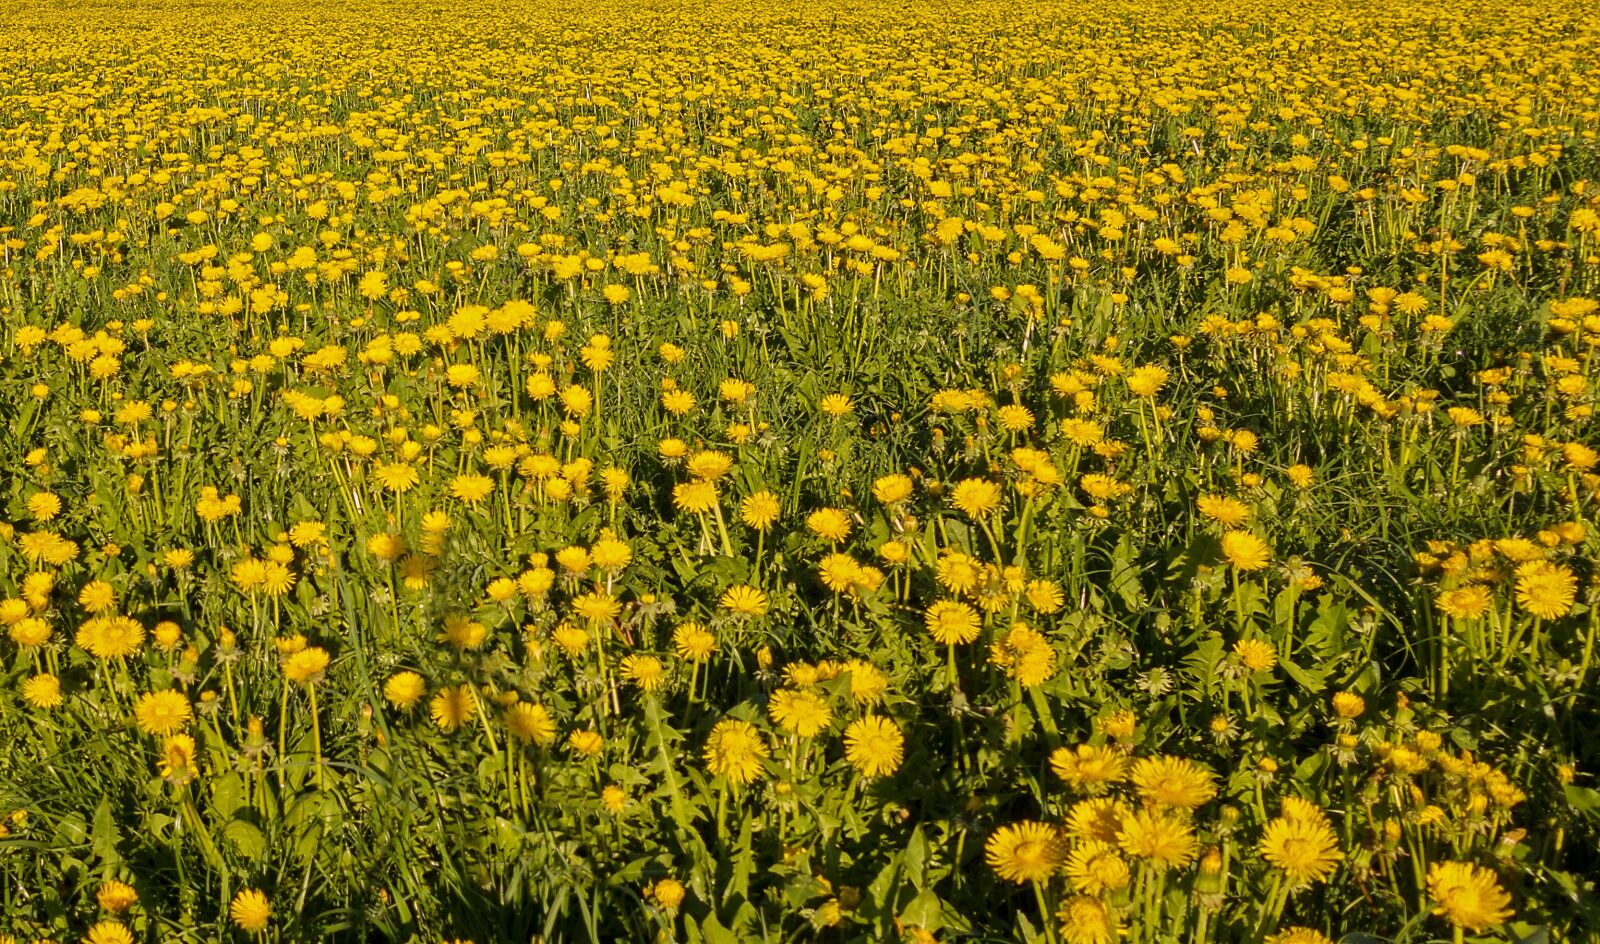 Sony Cyber-shot DSC-RX100 III sample photo. Dandelion, meadow, flower meadow photography